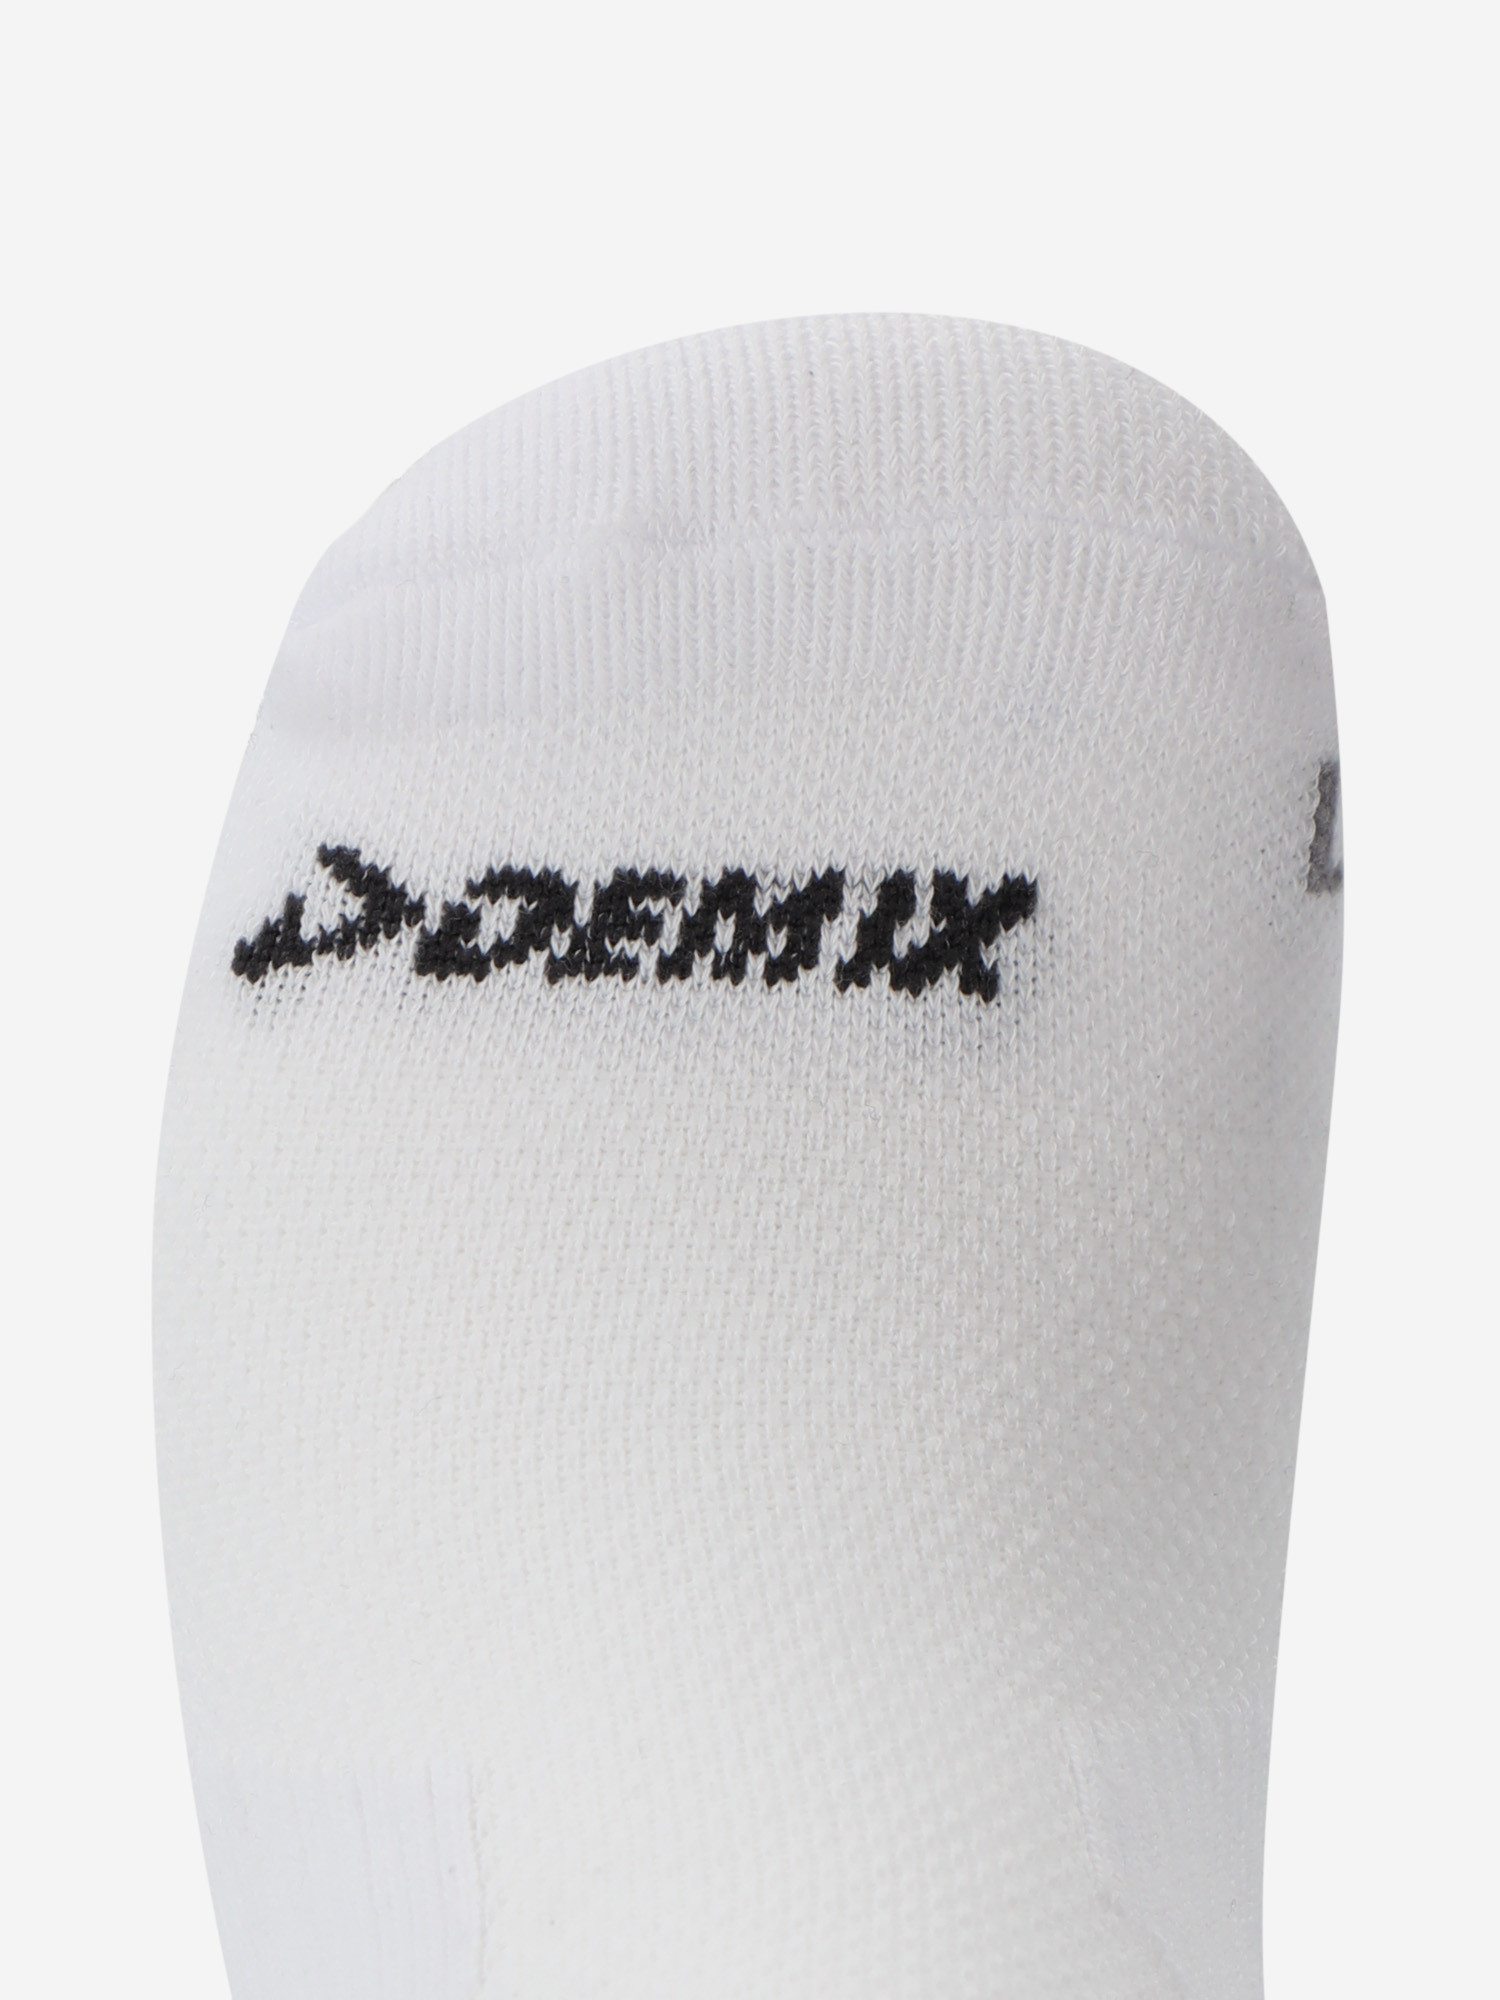 Шкарпетки жіночі Demix, 2 пари